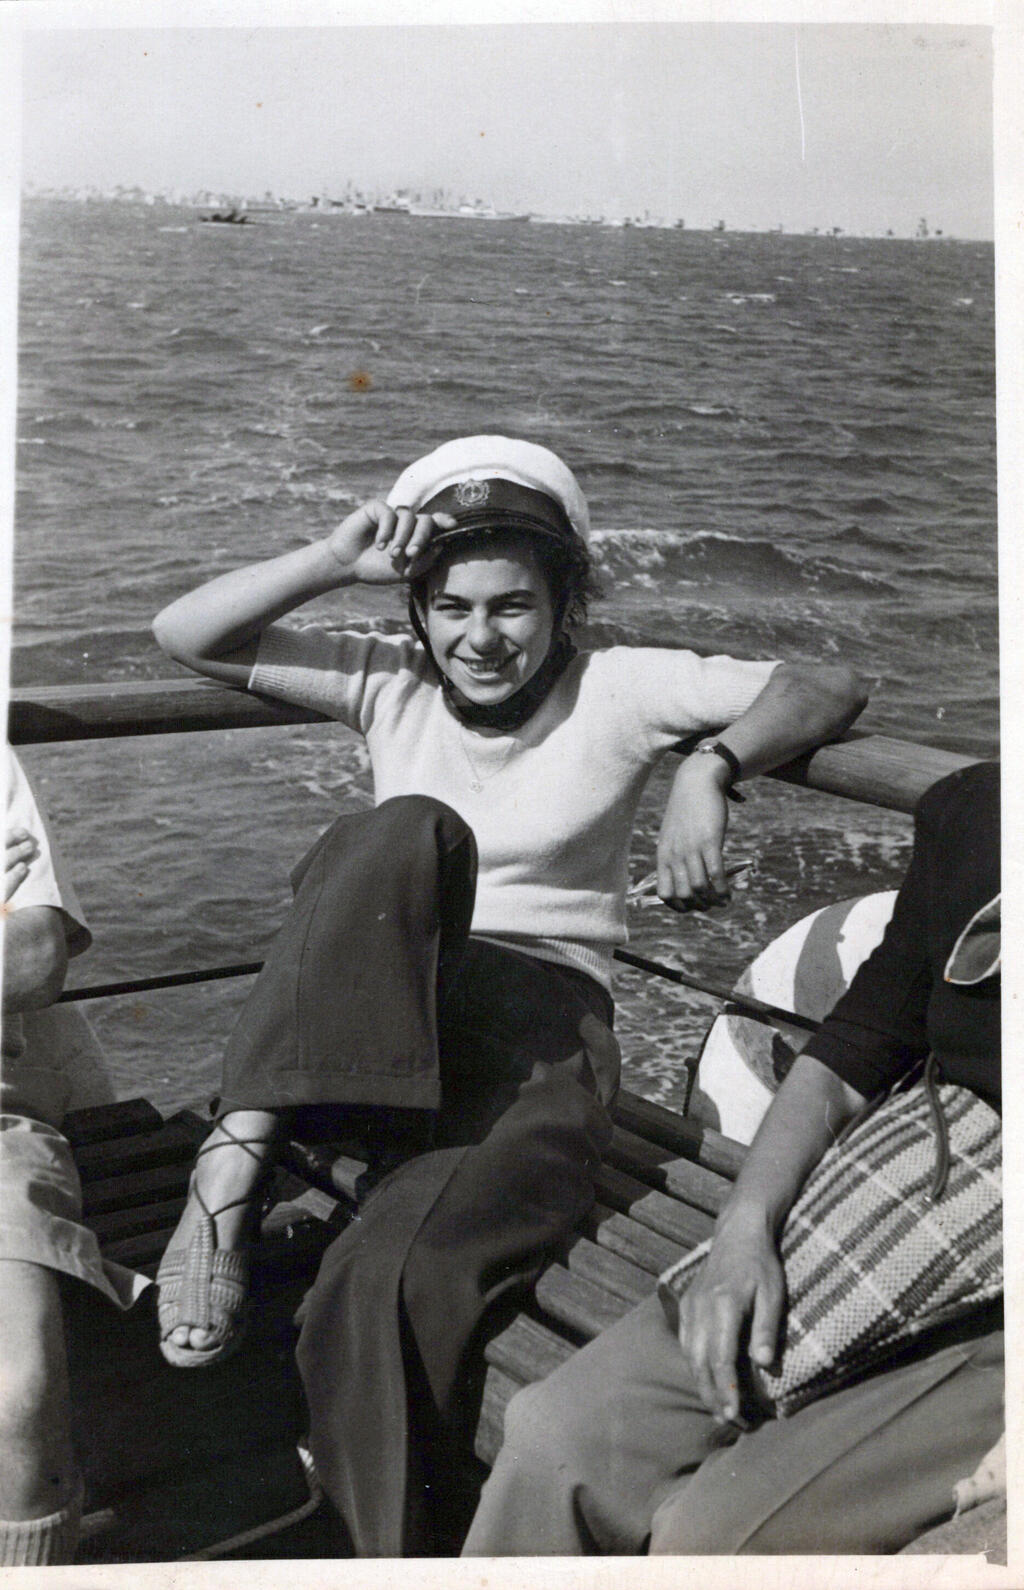 אנה ויסבלום בתמונה לפני המלחמה הגיעה לאושוויץ בגיל 14 פנאי